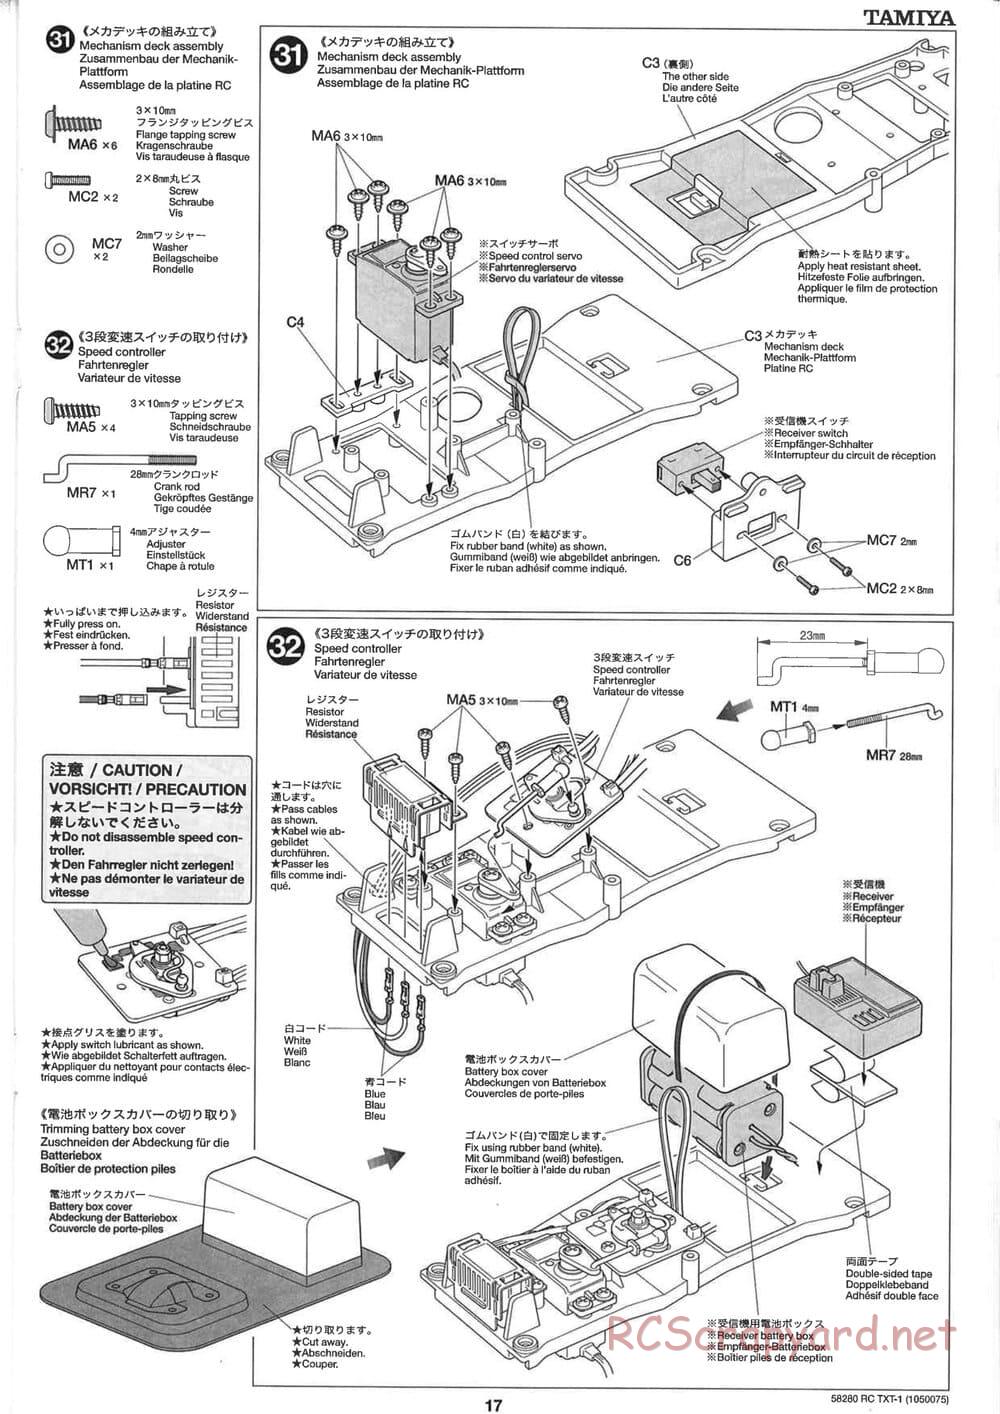 Tamiya - TXT-1 (Tamiya Xtreme Truck) Chassis - Manual - Page 17